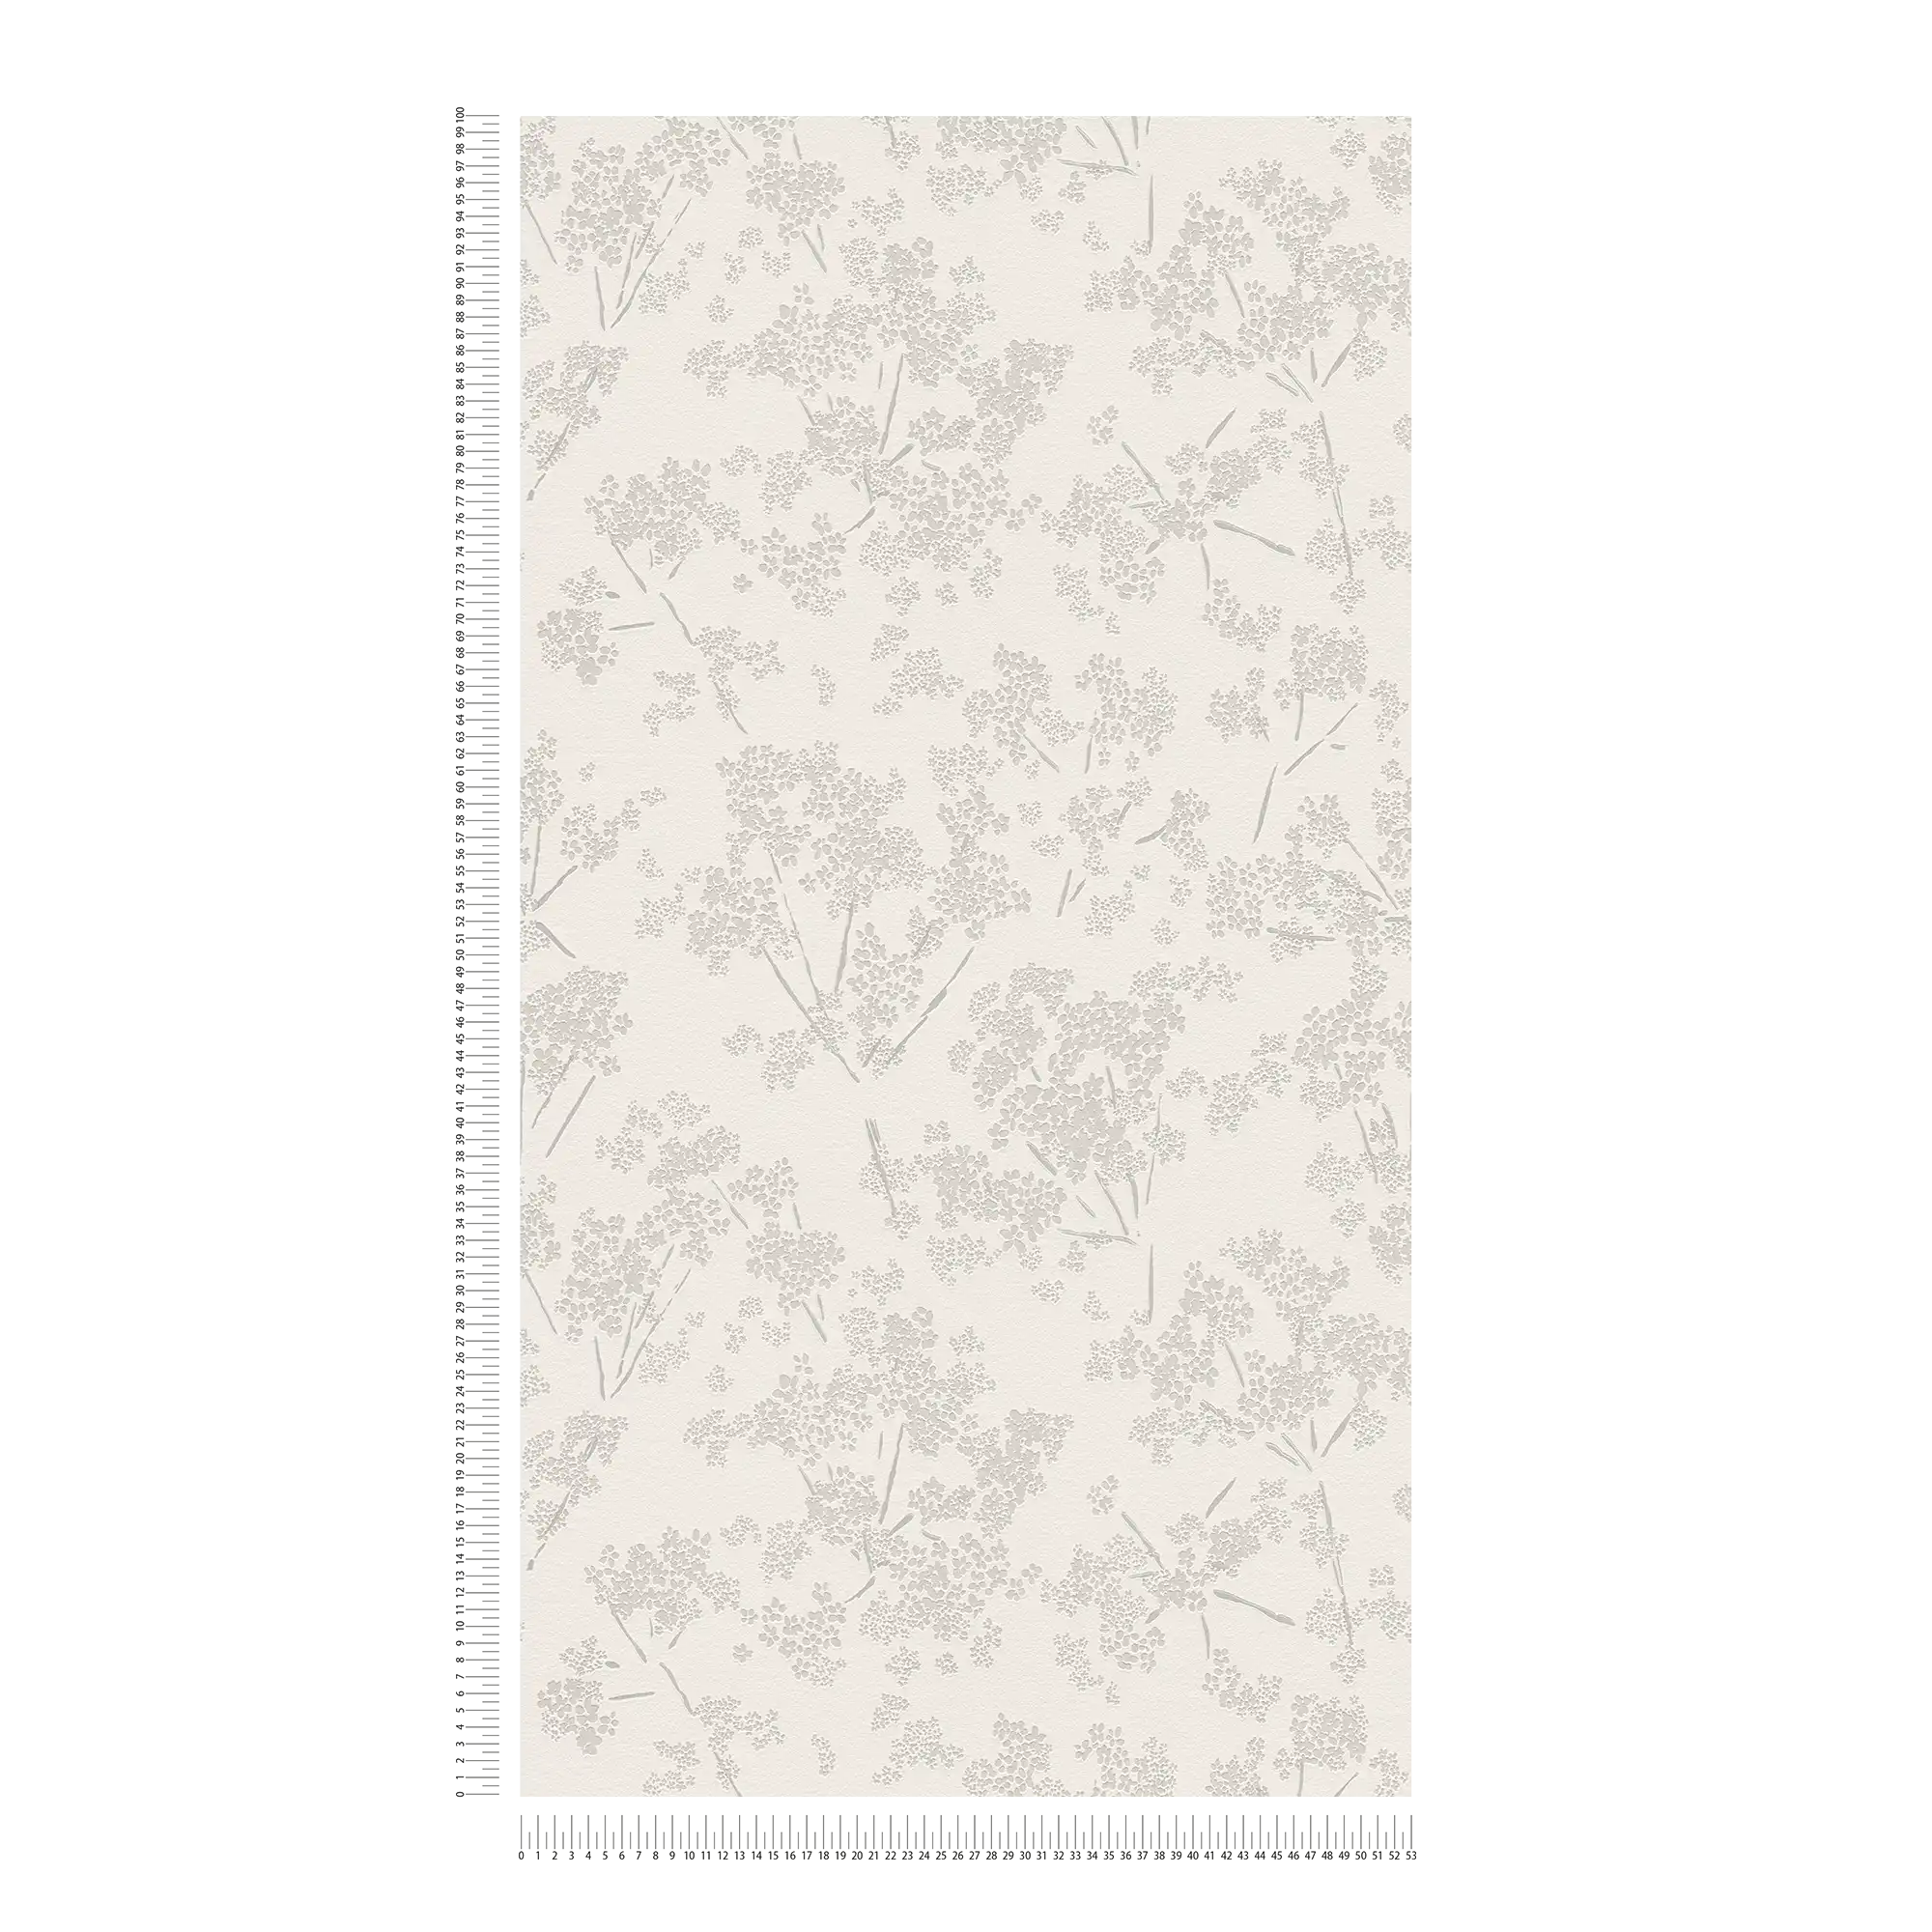             Carta da parati non tessuta con motivo floreale - bianco, grigio
        